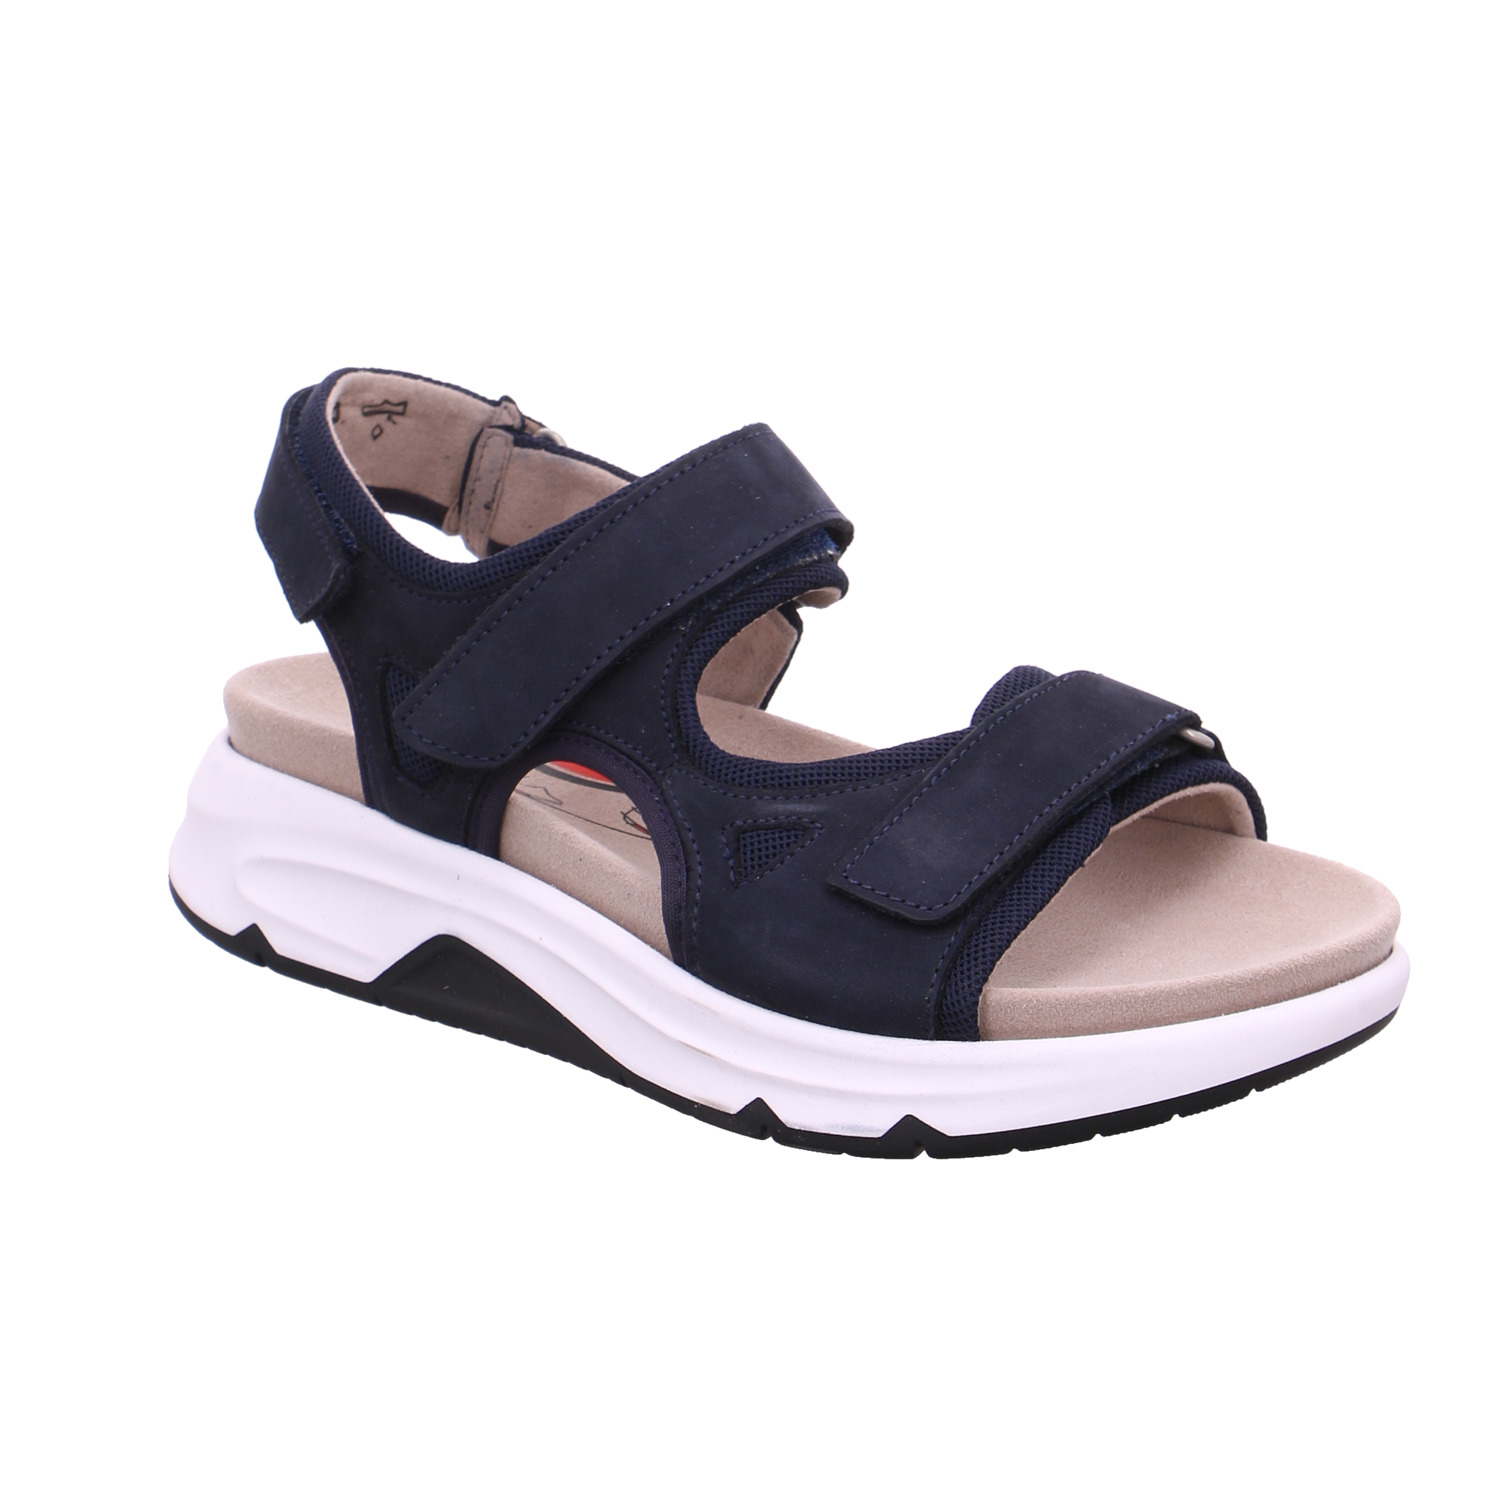 GABOR Comfort-Sandalette Blau Leder mit Wechselfussbett